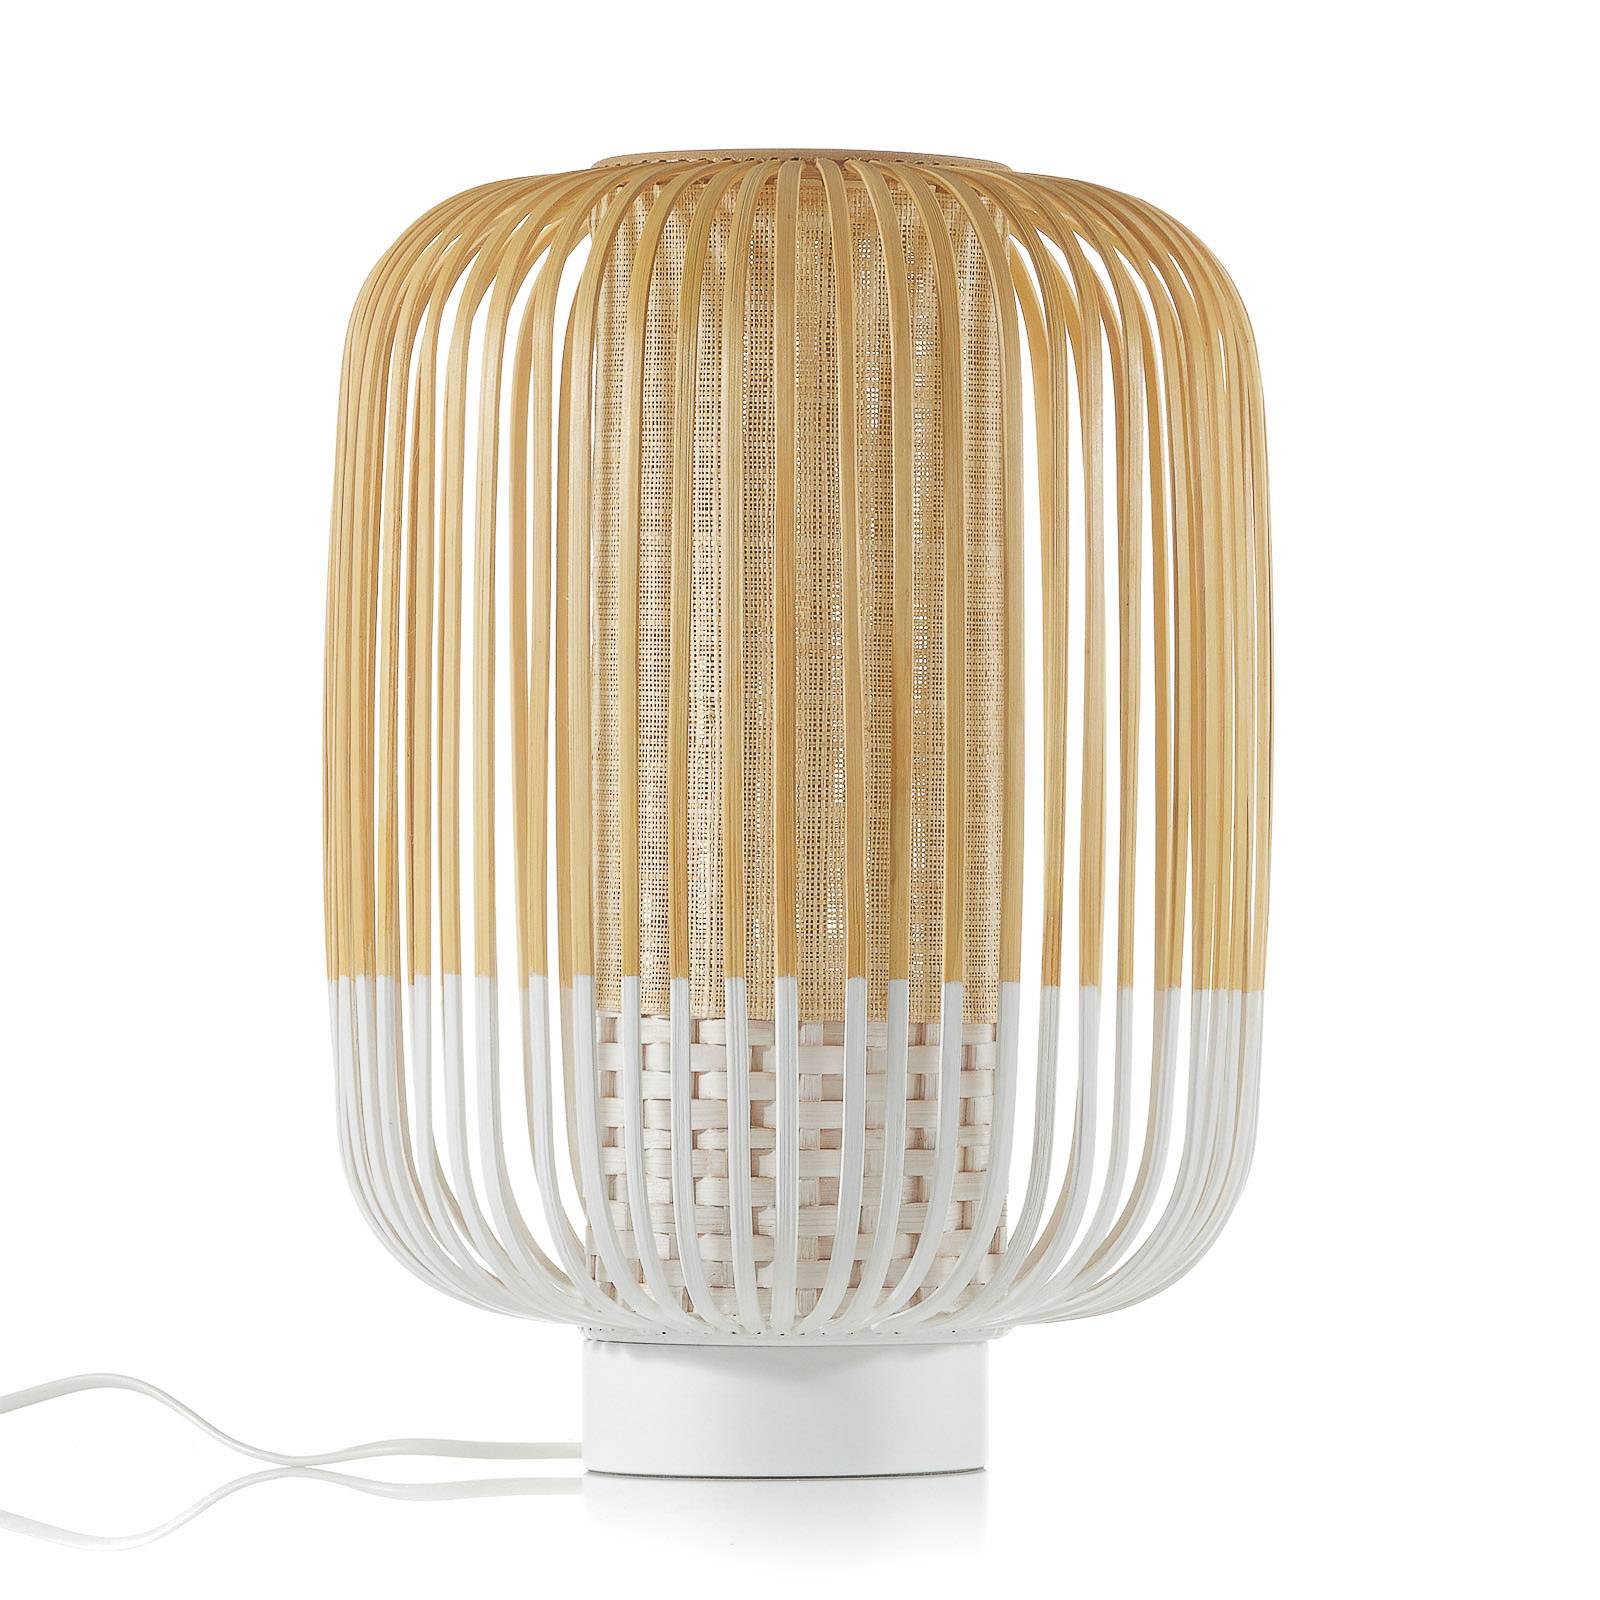 Forestier Bamboo Light M Tischlampe 39 cm weiß